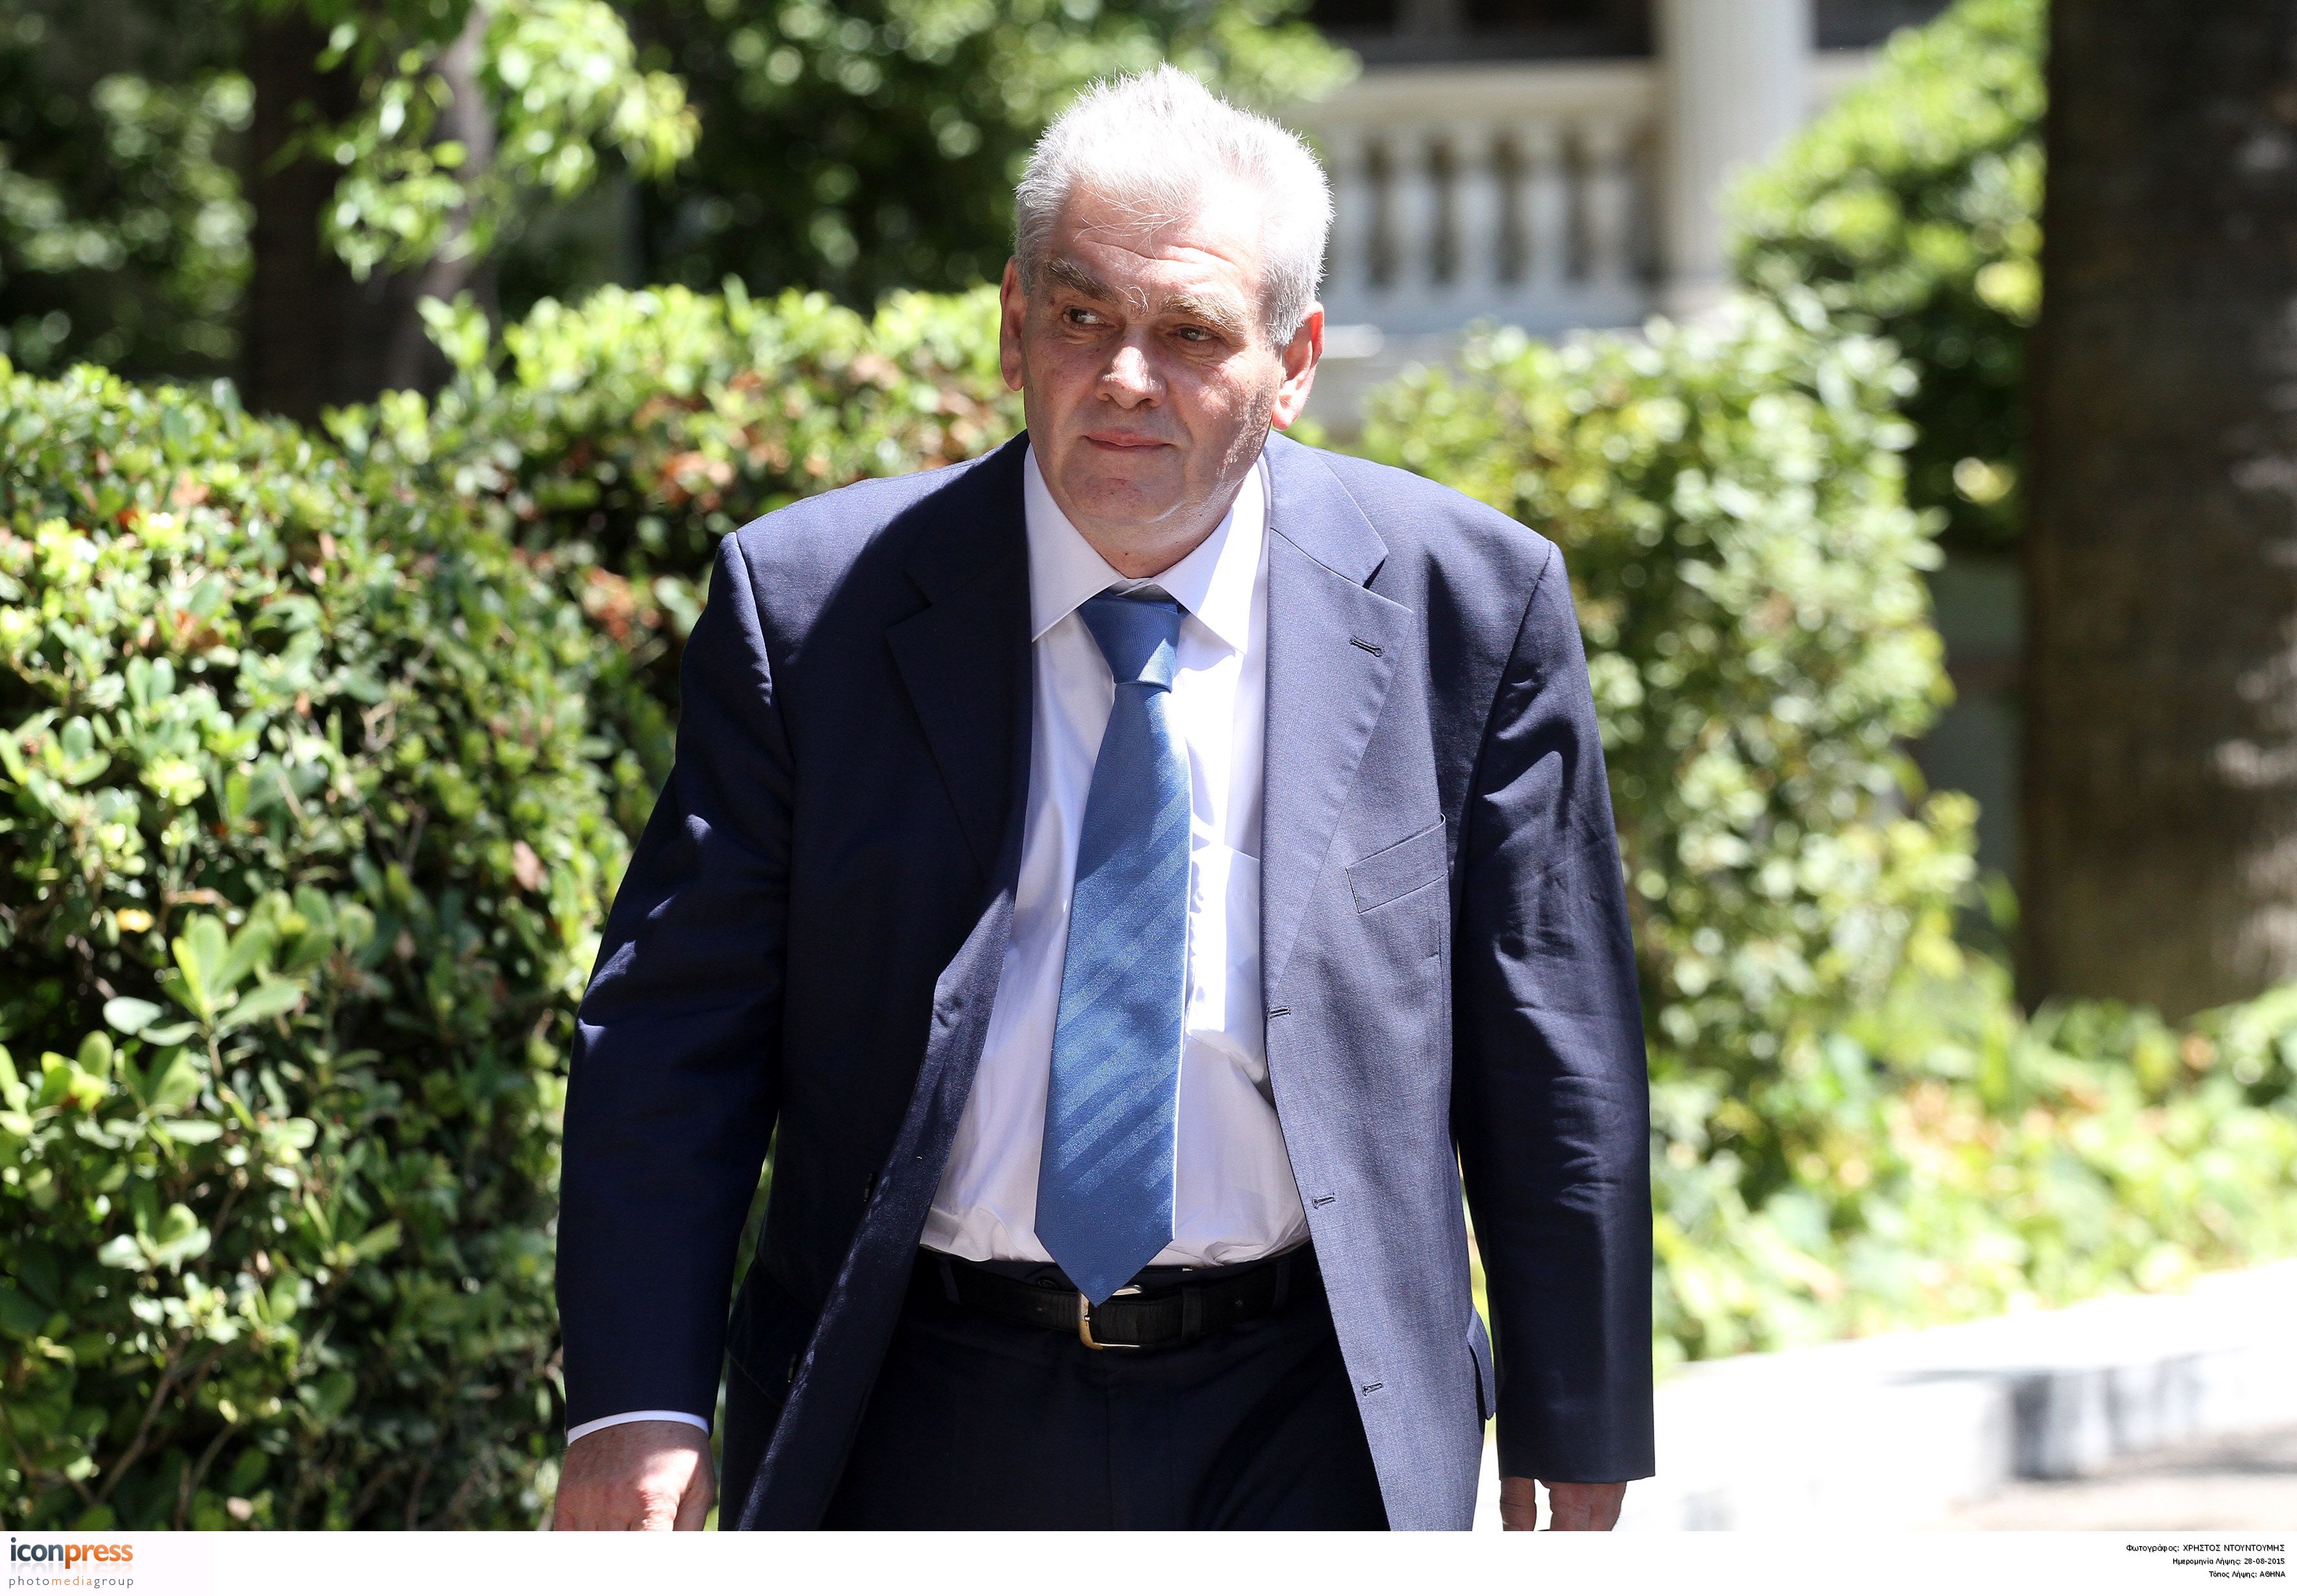 Αντικυβερνητική διάθεση και συντεχνιακή νοοτροπία καταλογίζει στους εισαγγελείς ο Παπαγγελόπουλος